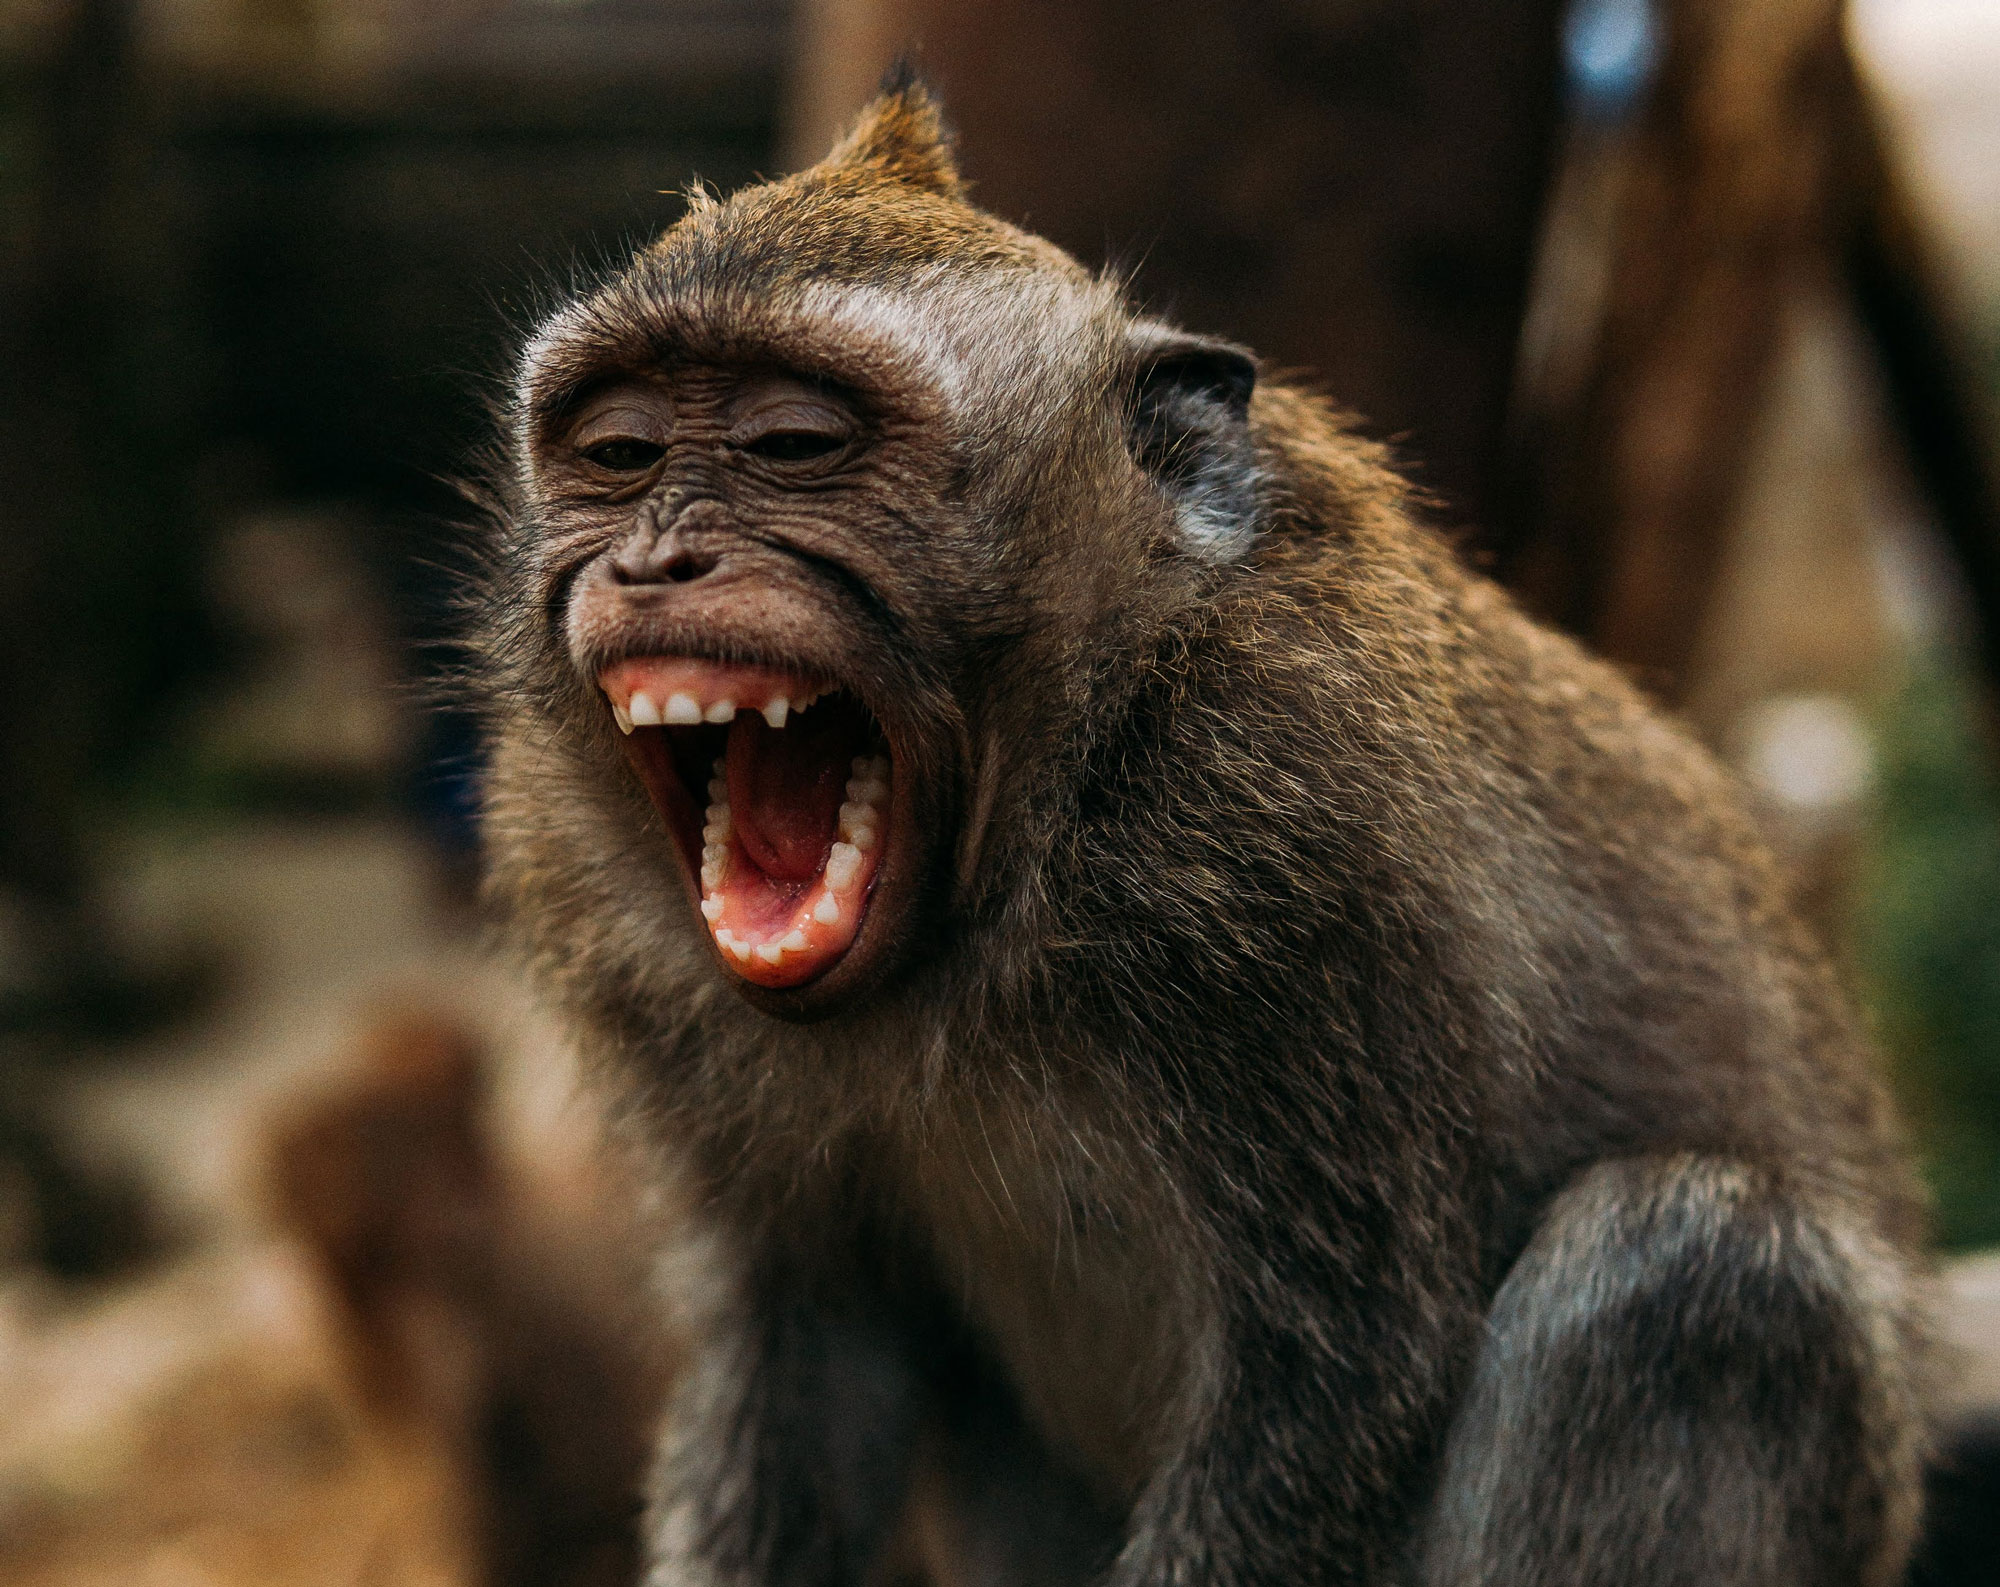 Ook dieren kunnen lachen. Tijdens het spelen gebruiken dieren vaak signalen die ruzie voorkomen en het contact verbeteren.